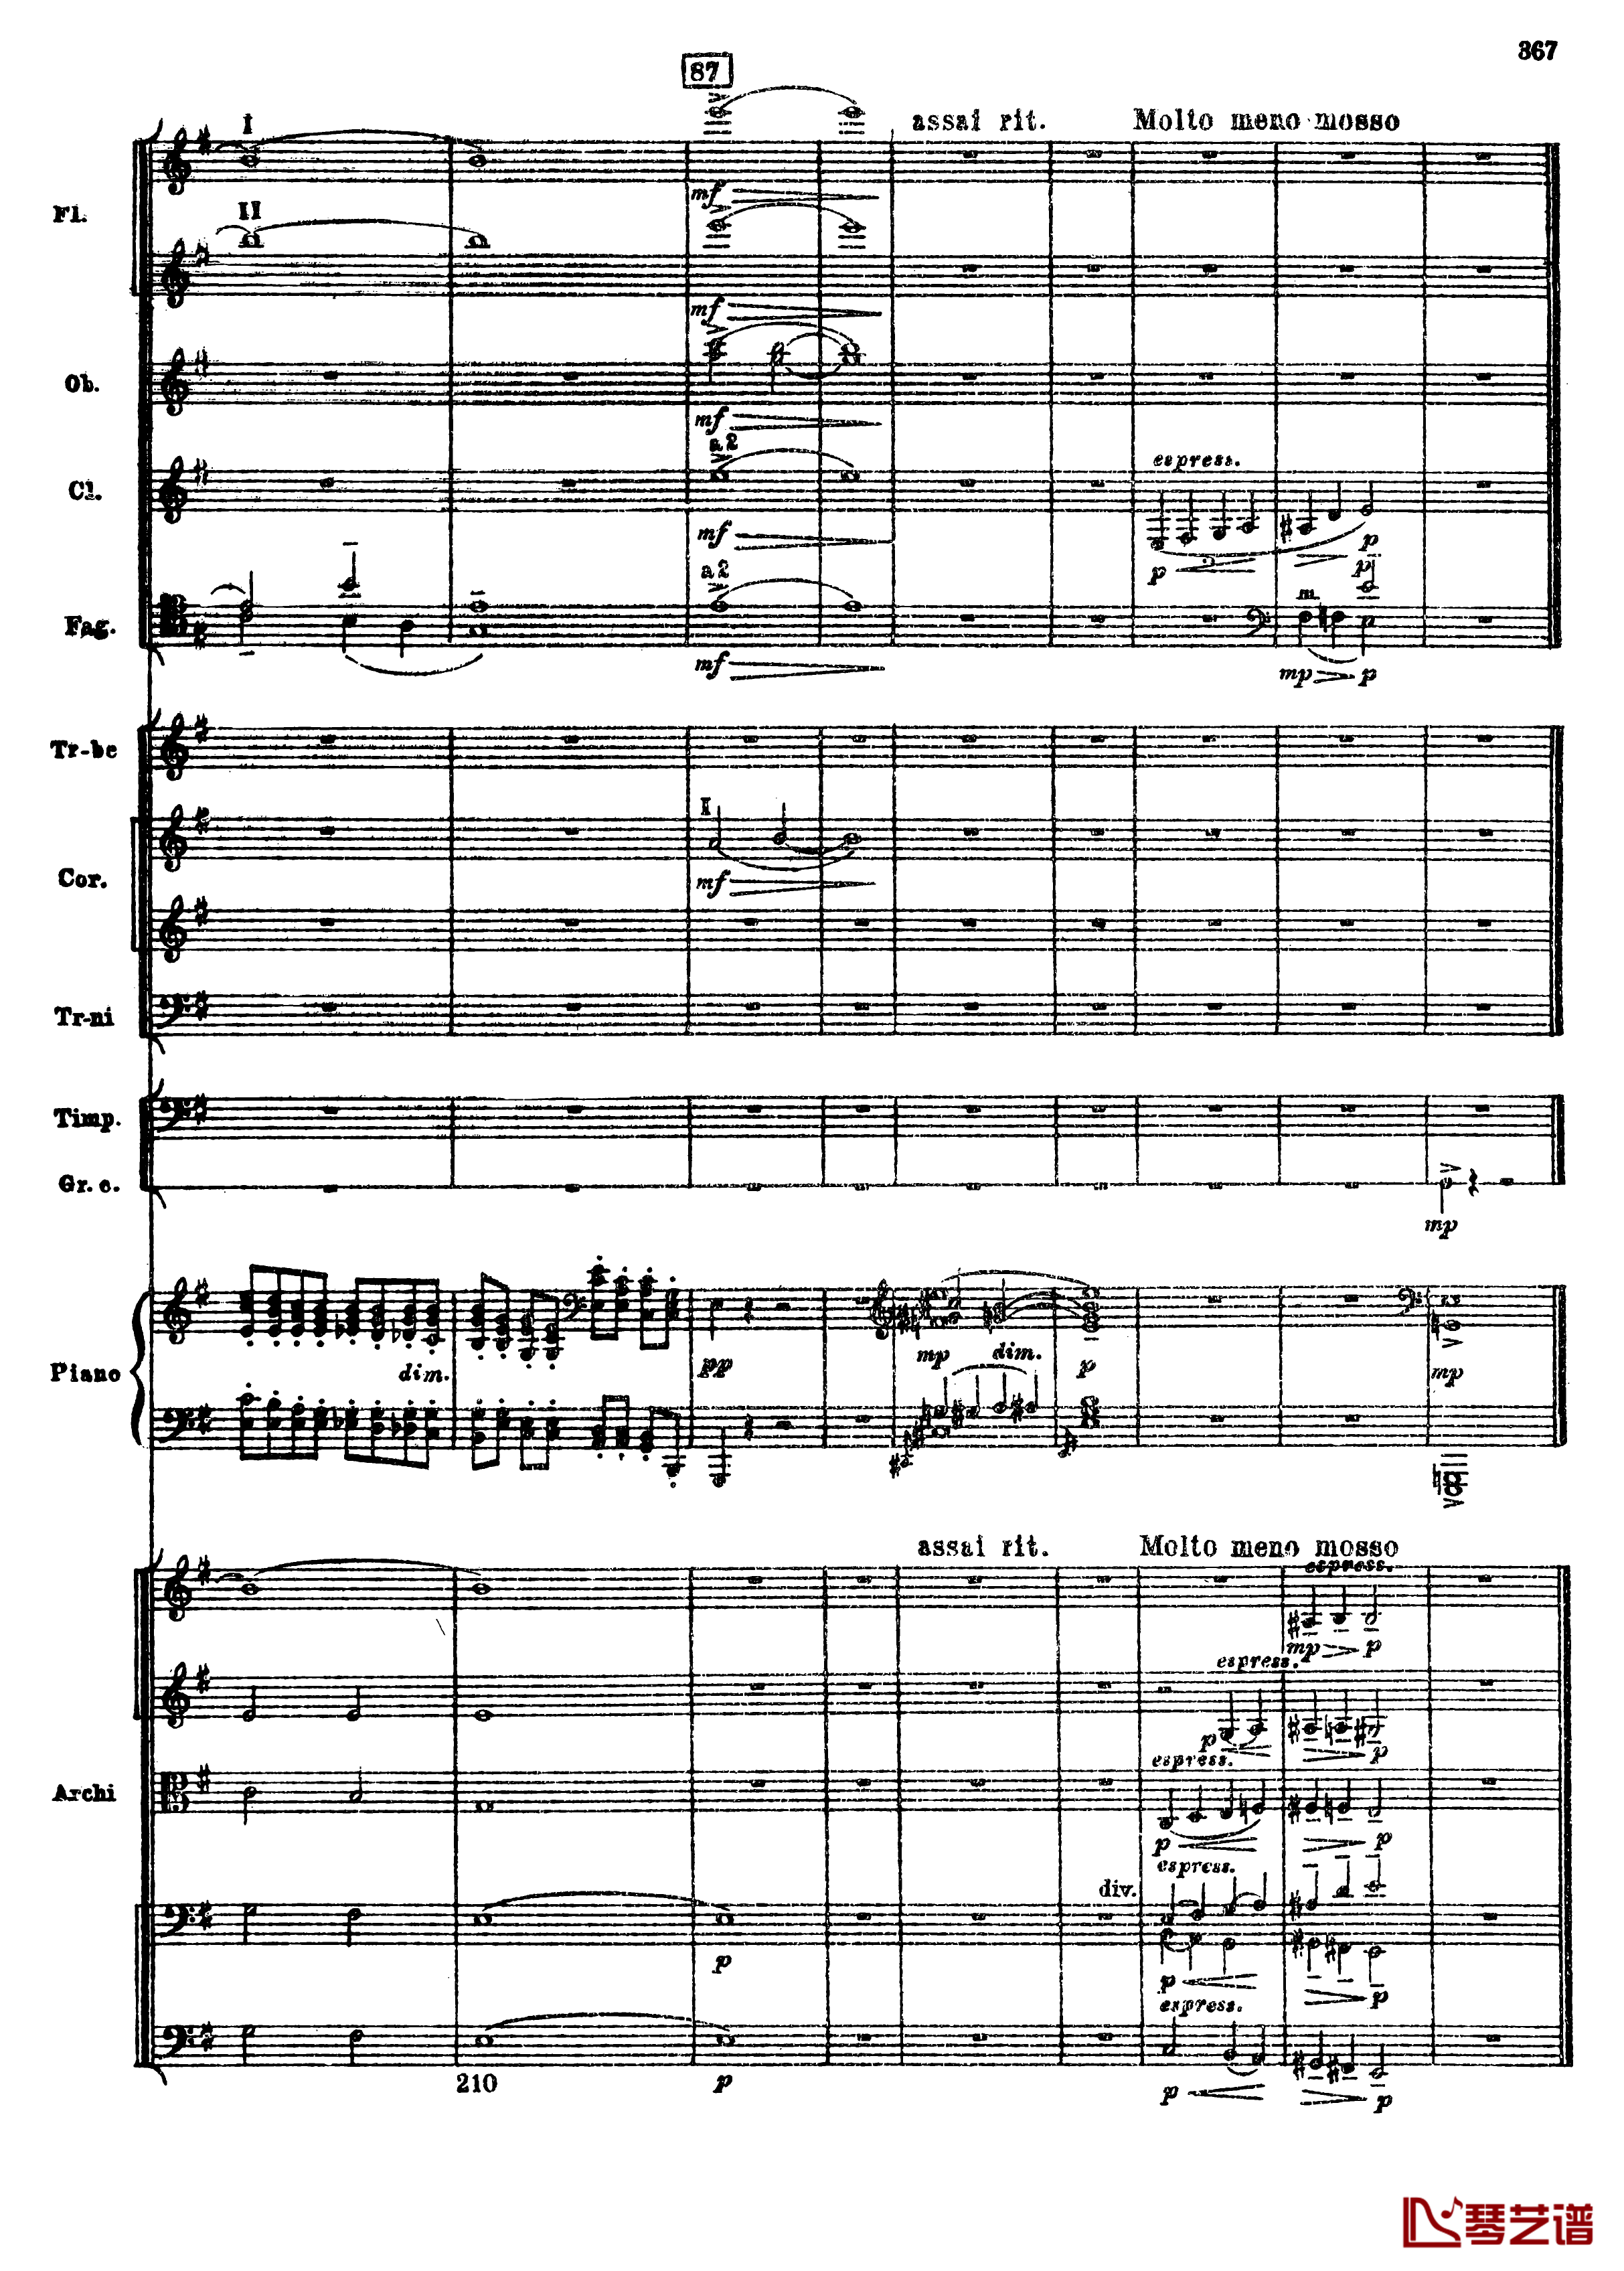 普罗科菲耶夫第三钢琴协奏曲钢琴谱-总谱-普罗科非耶夫99